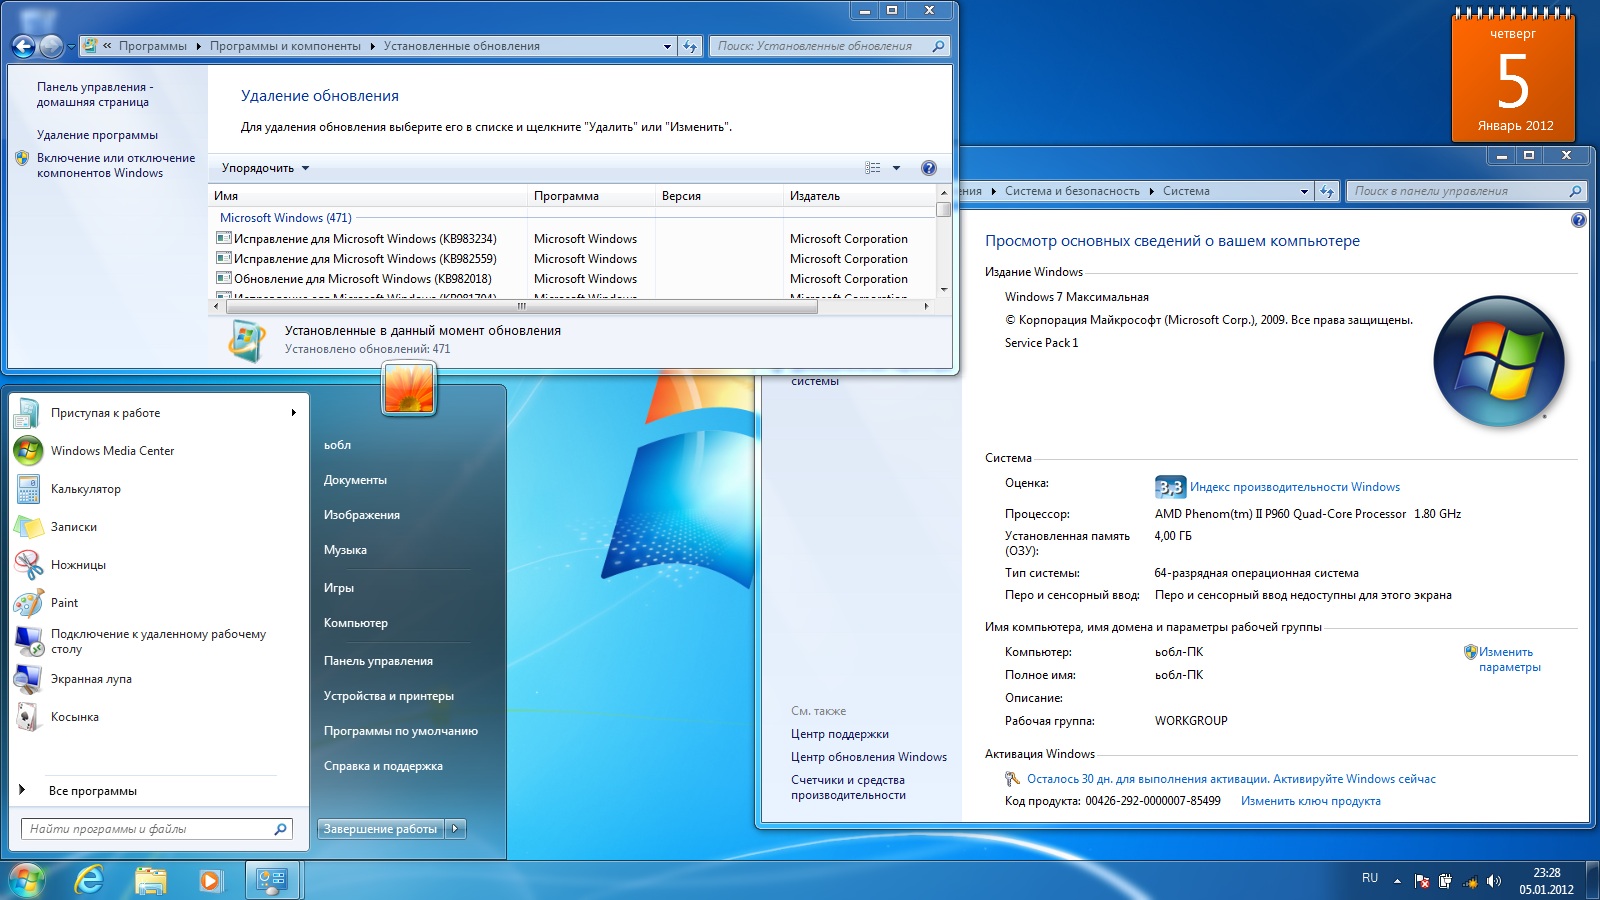 Windows 7 Максимальная X32 С Ключом